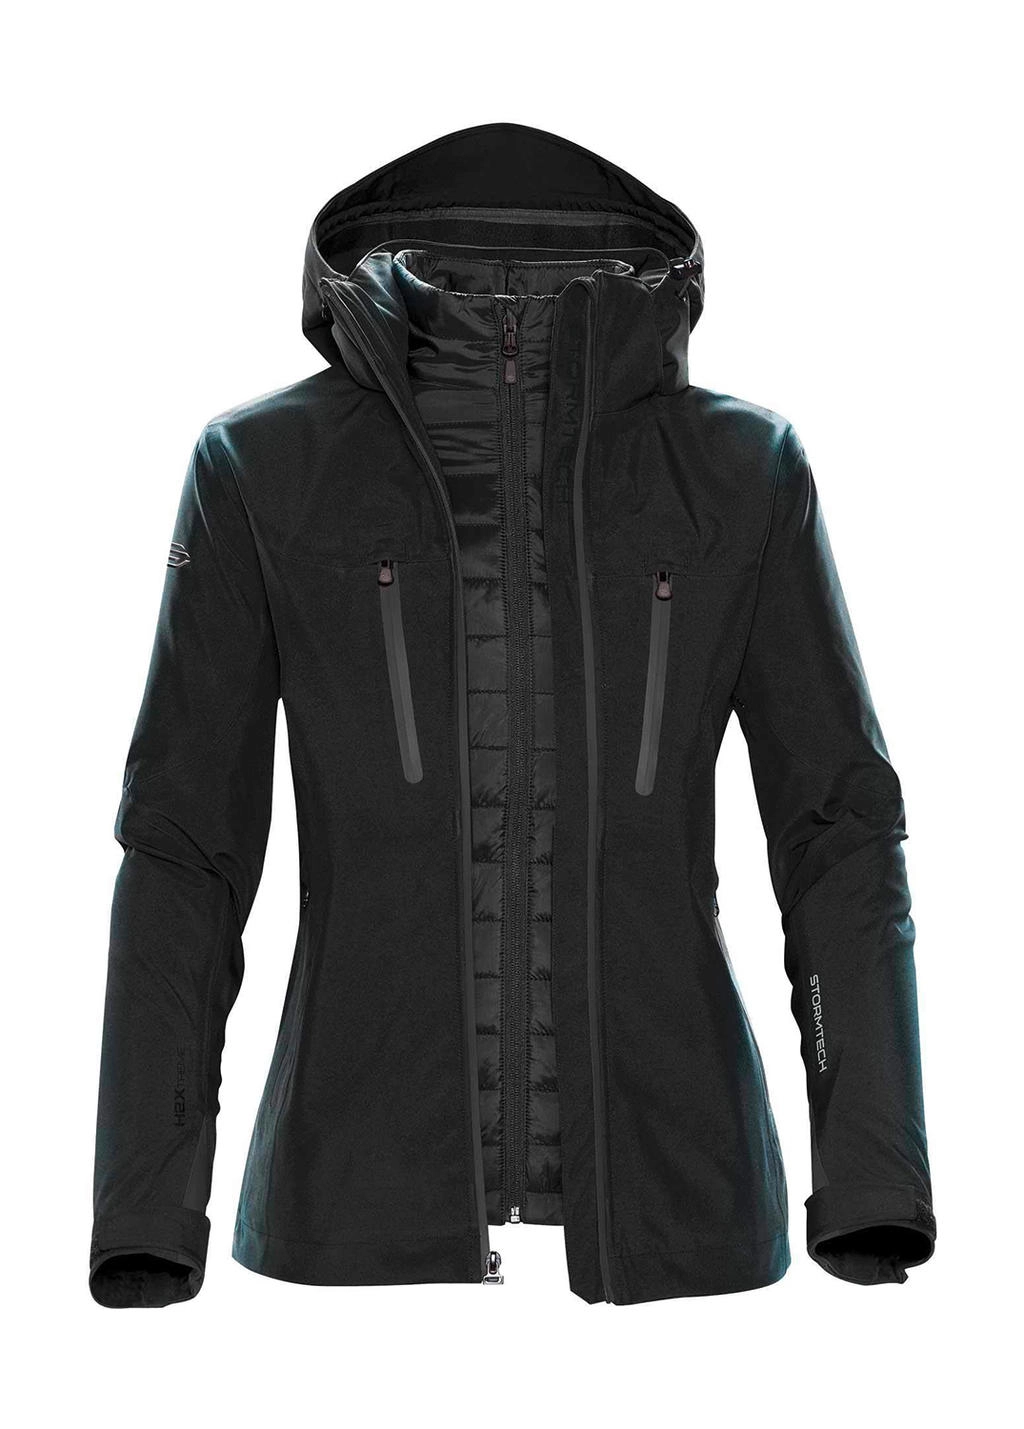 Women`s Matrix System Jacket zum Besticken und Bedrucken in der Farbe Black/Carbon mit Ihren Logo, Schriftzug oder Motiv.